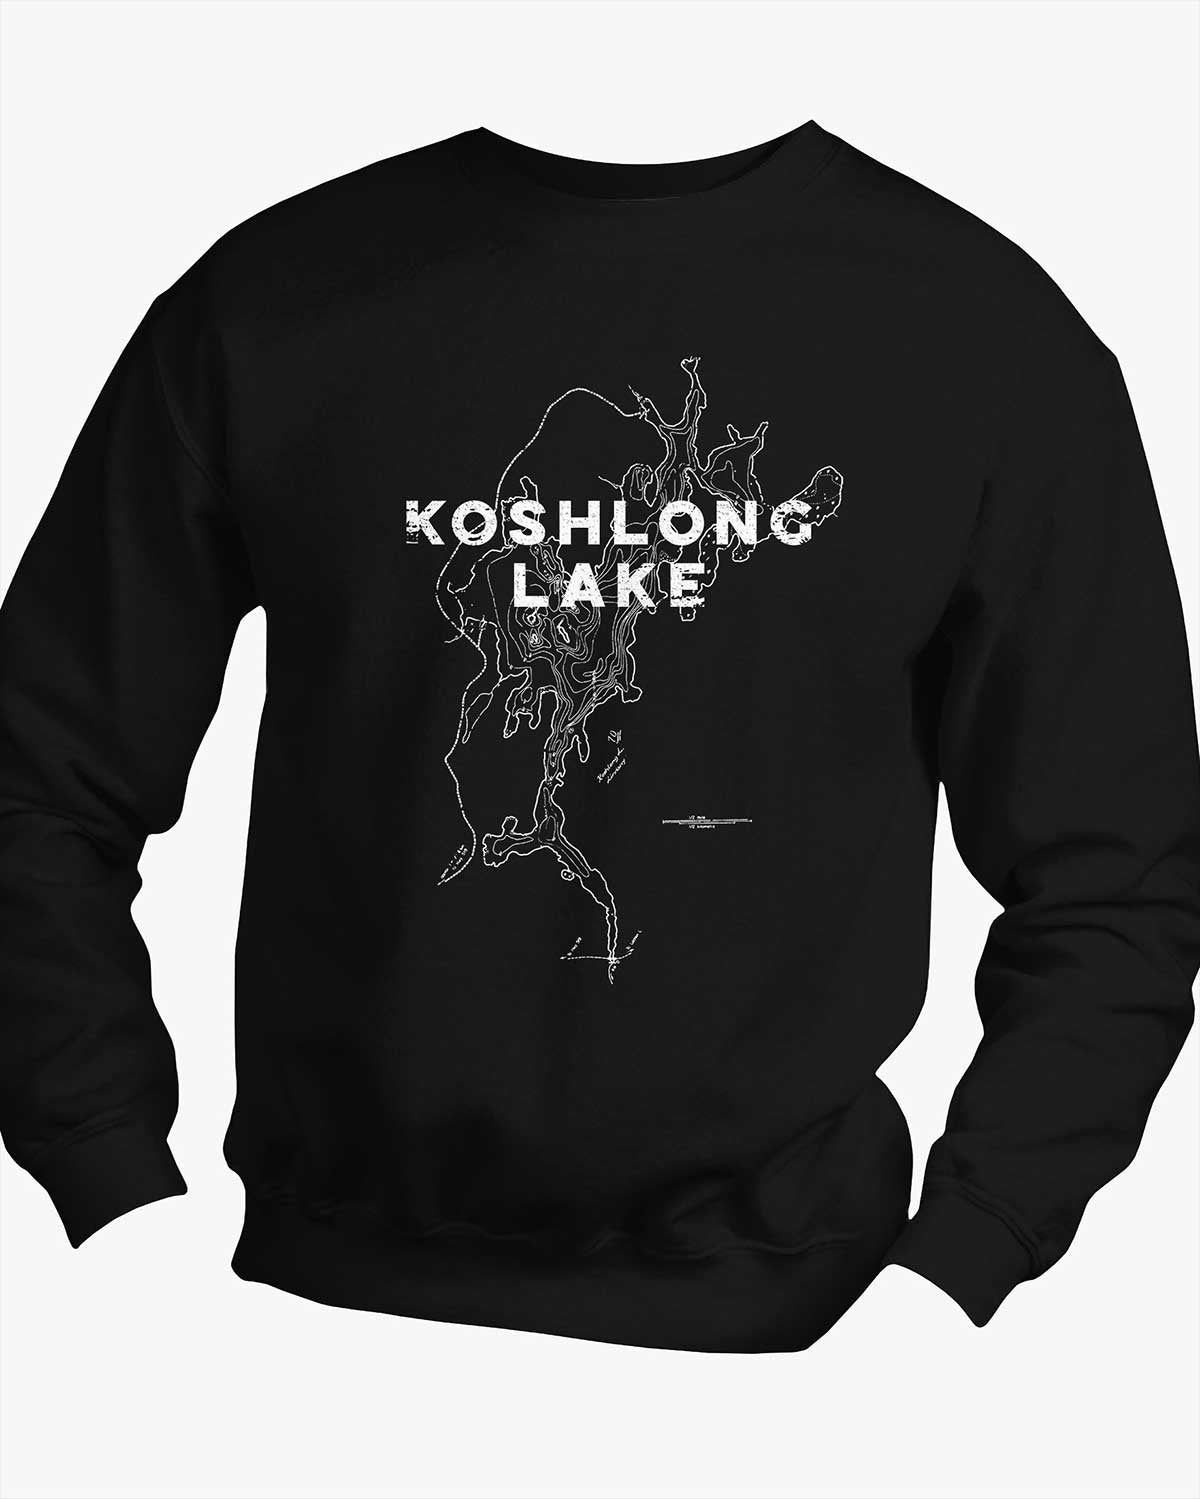 Lake Contours - Koshlong Lake - Sweater